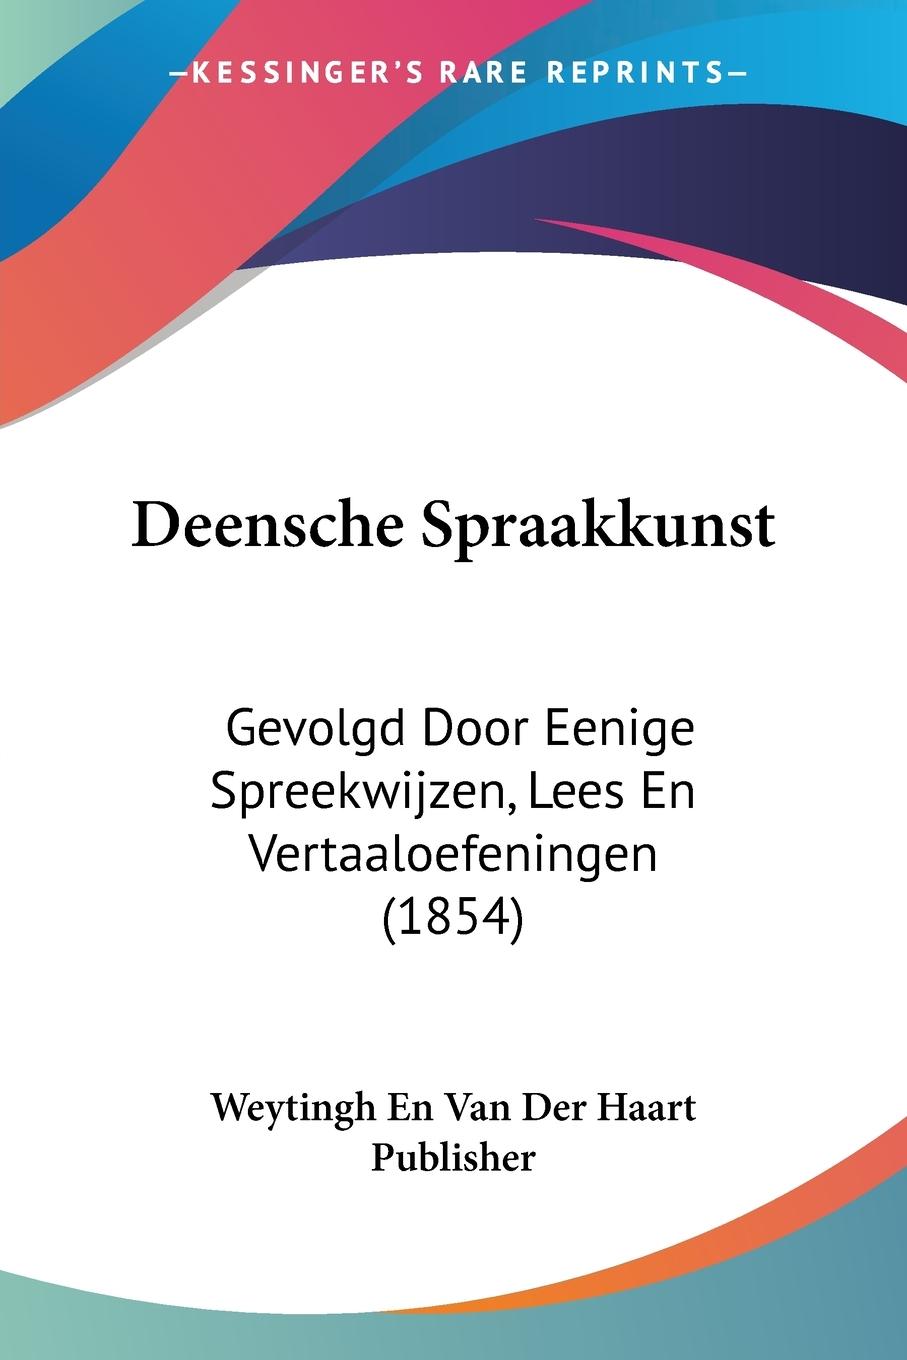 Deensche Spraakkunst - Weytingh En Van Der Haart Publisher